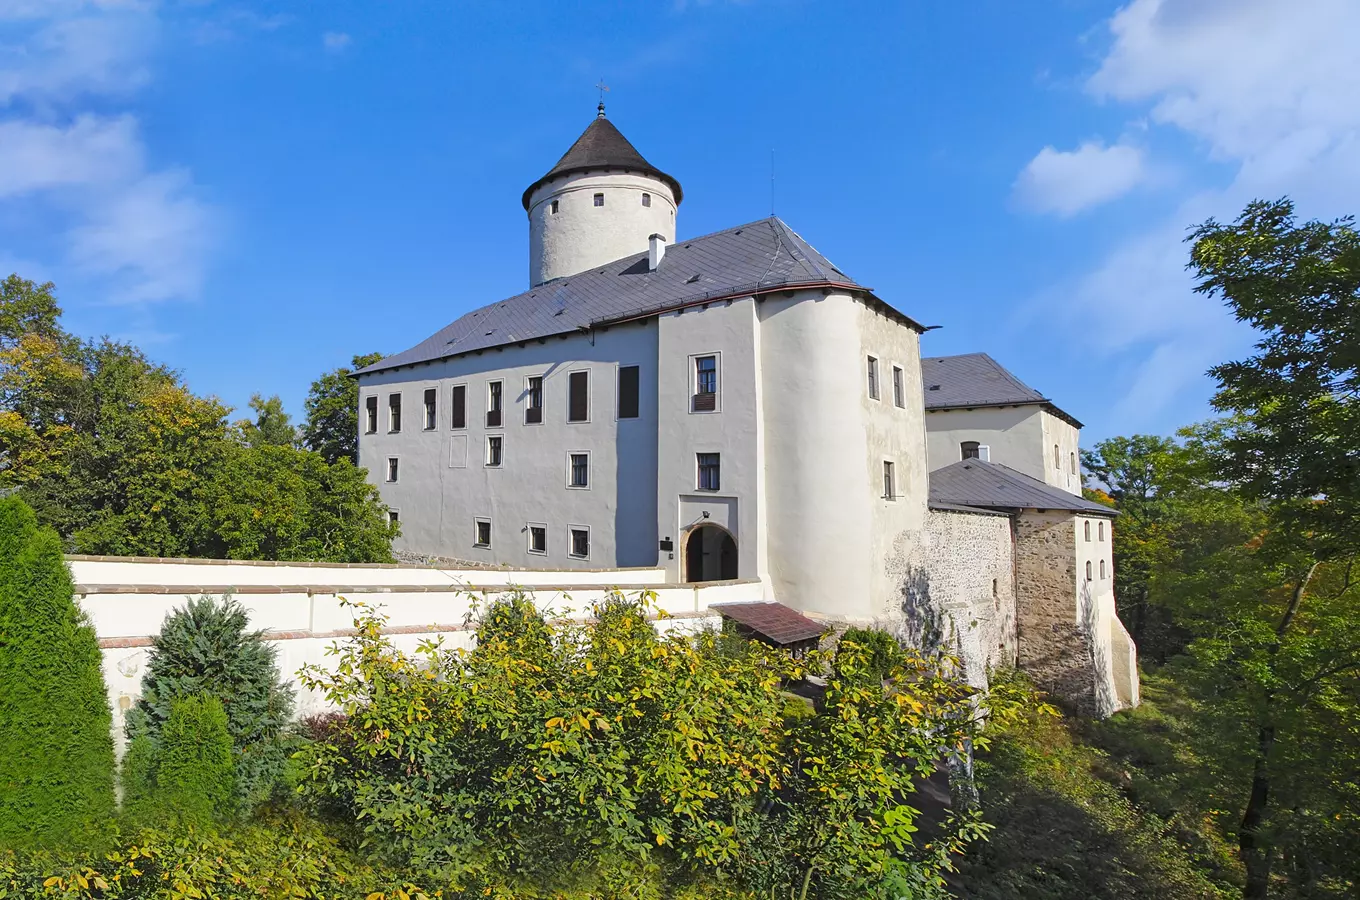 Po téměř sedmdesáti letech bude poprvé zpřístupněn hrad Rychmburk u Skutče